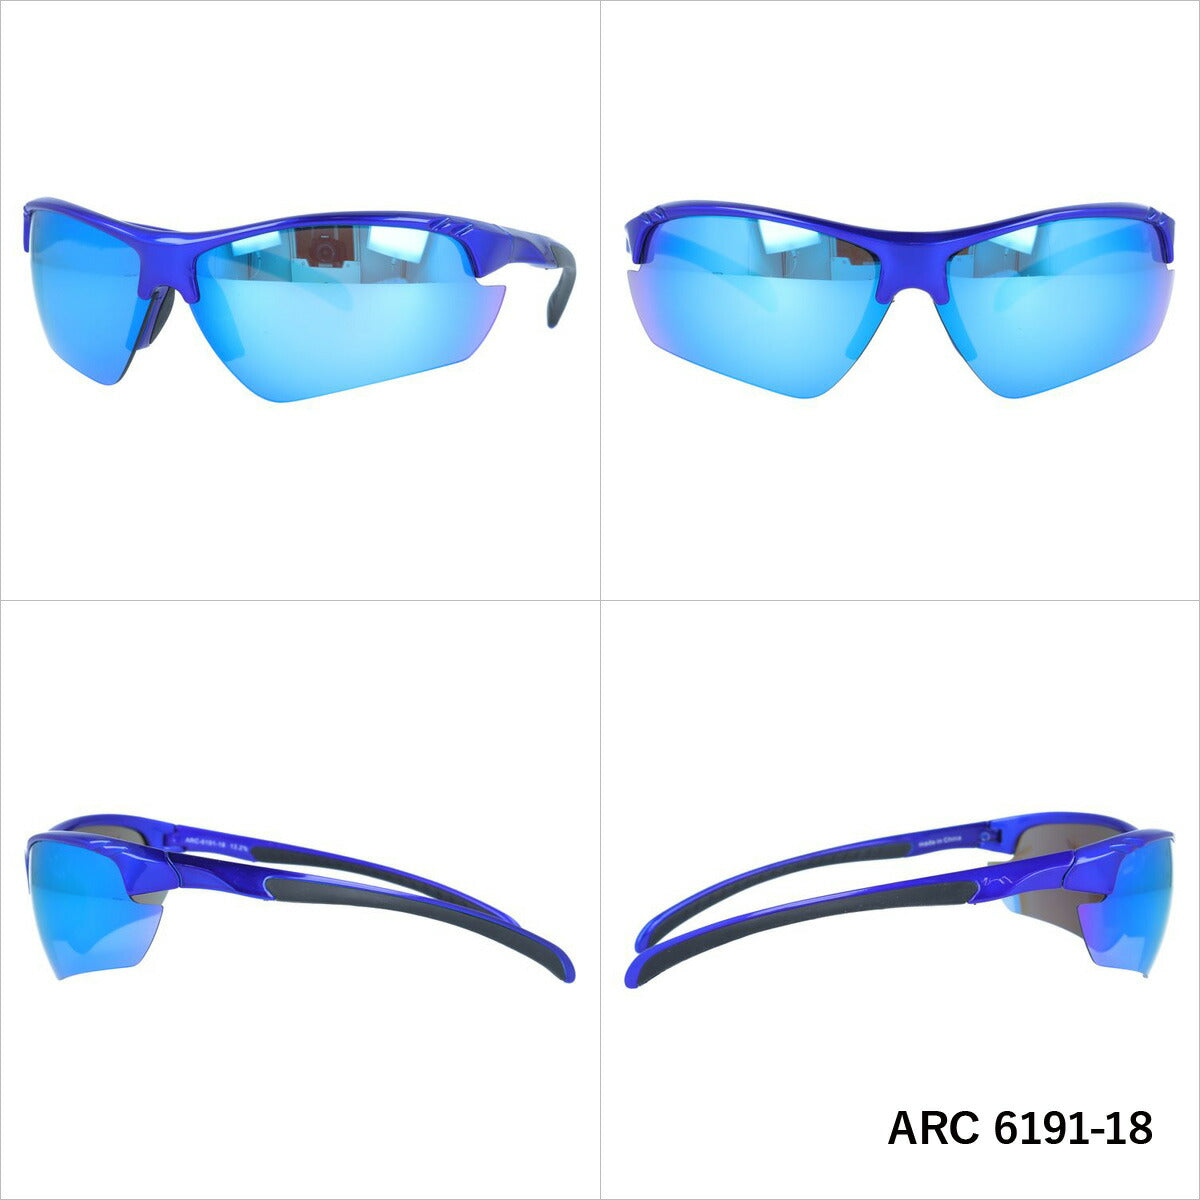 アークスタイル サングラス ミラーレンズ アジアンフィット ARC Style ARC 6191 全2カラー 80サイズ スポーツ メンズ レディース 紫外線対策 UVカット おしゃれ プレゼント ギフト